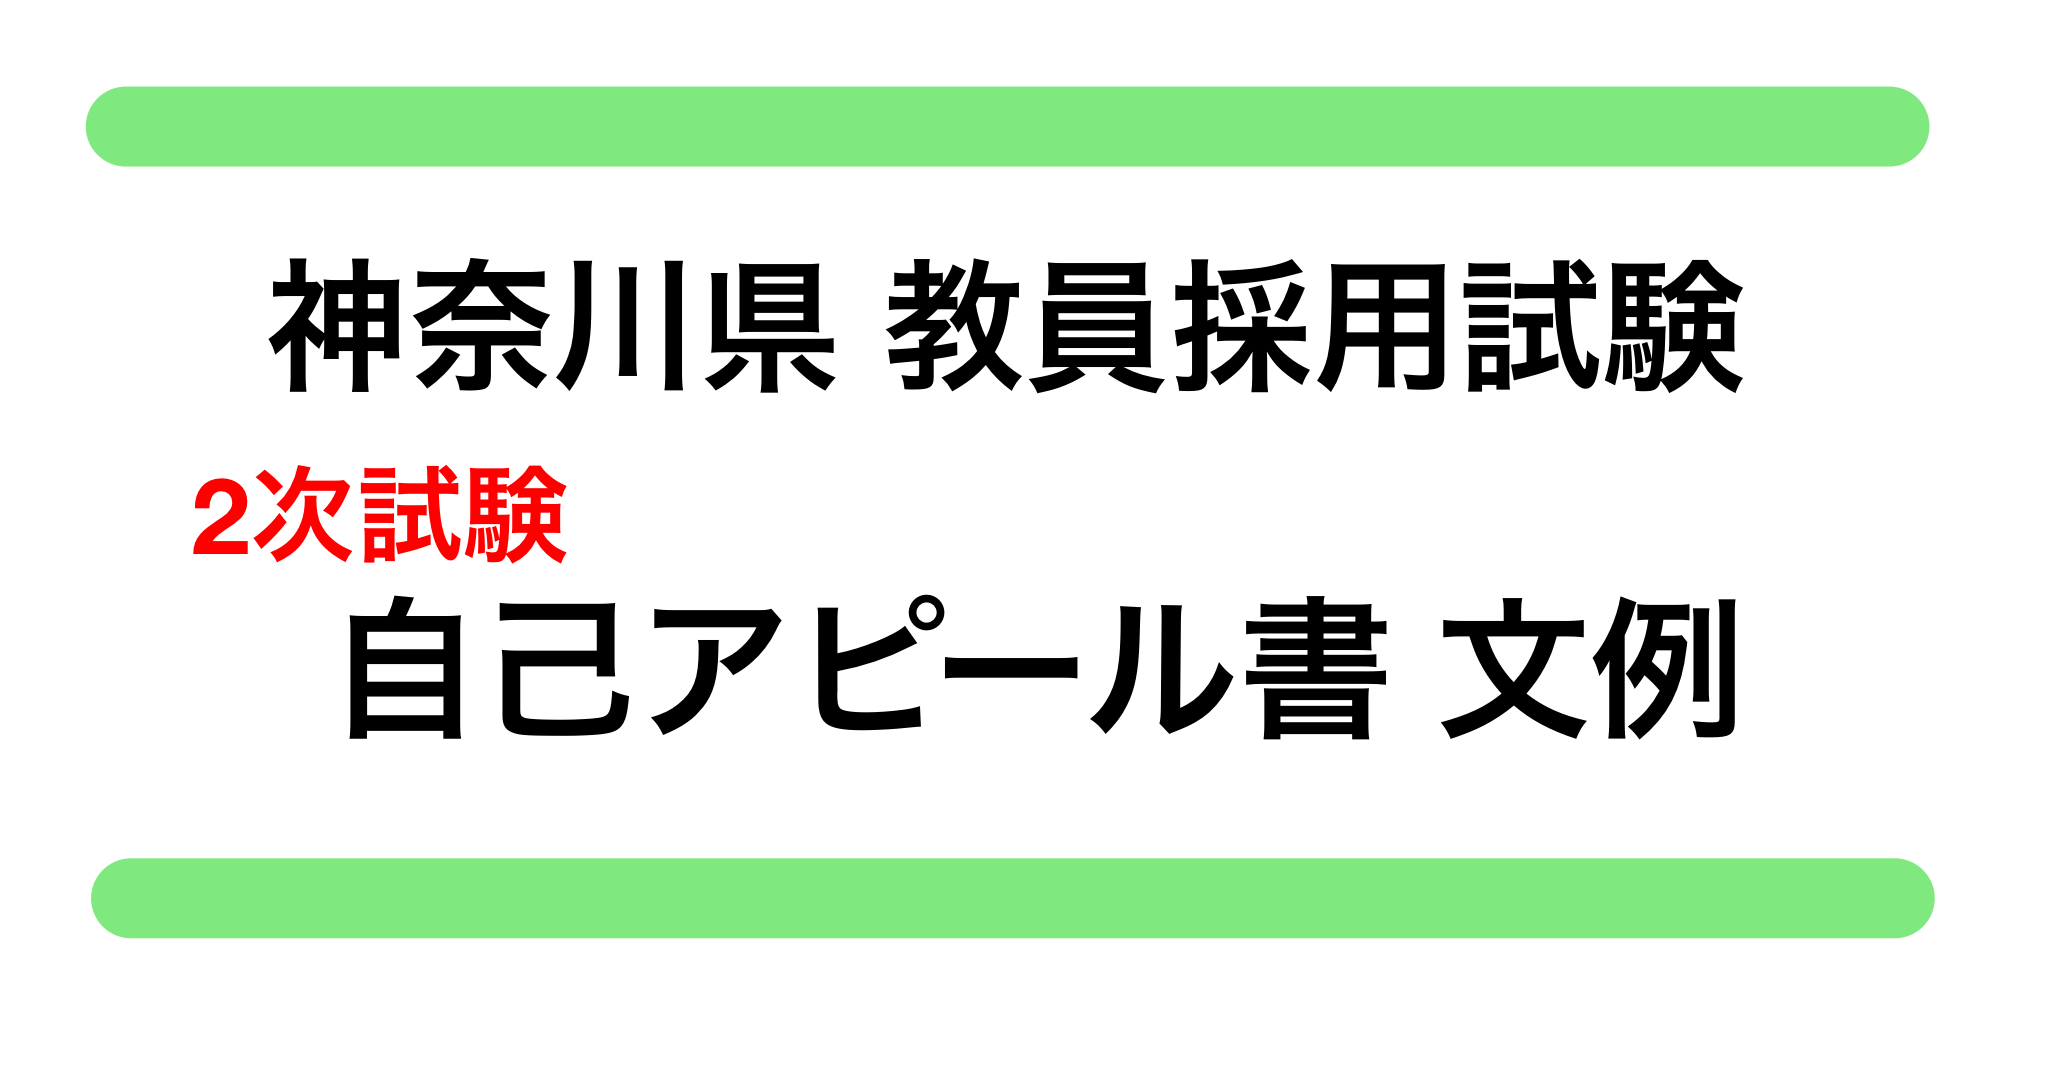 神奈川県 教員採用試験 自己アピール書 文例 教員採用試験対策 きょうさい対策ブログ